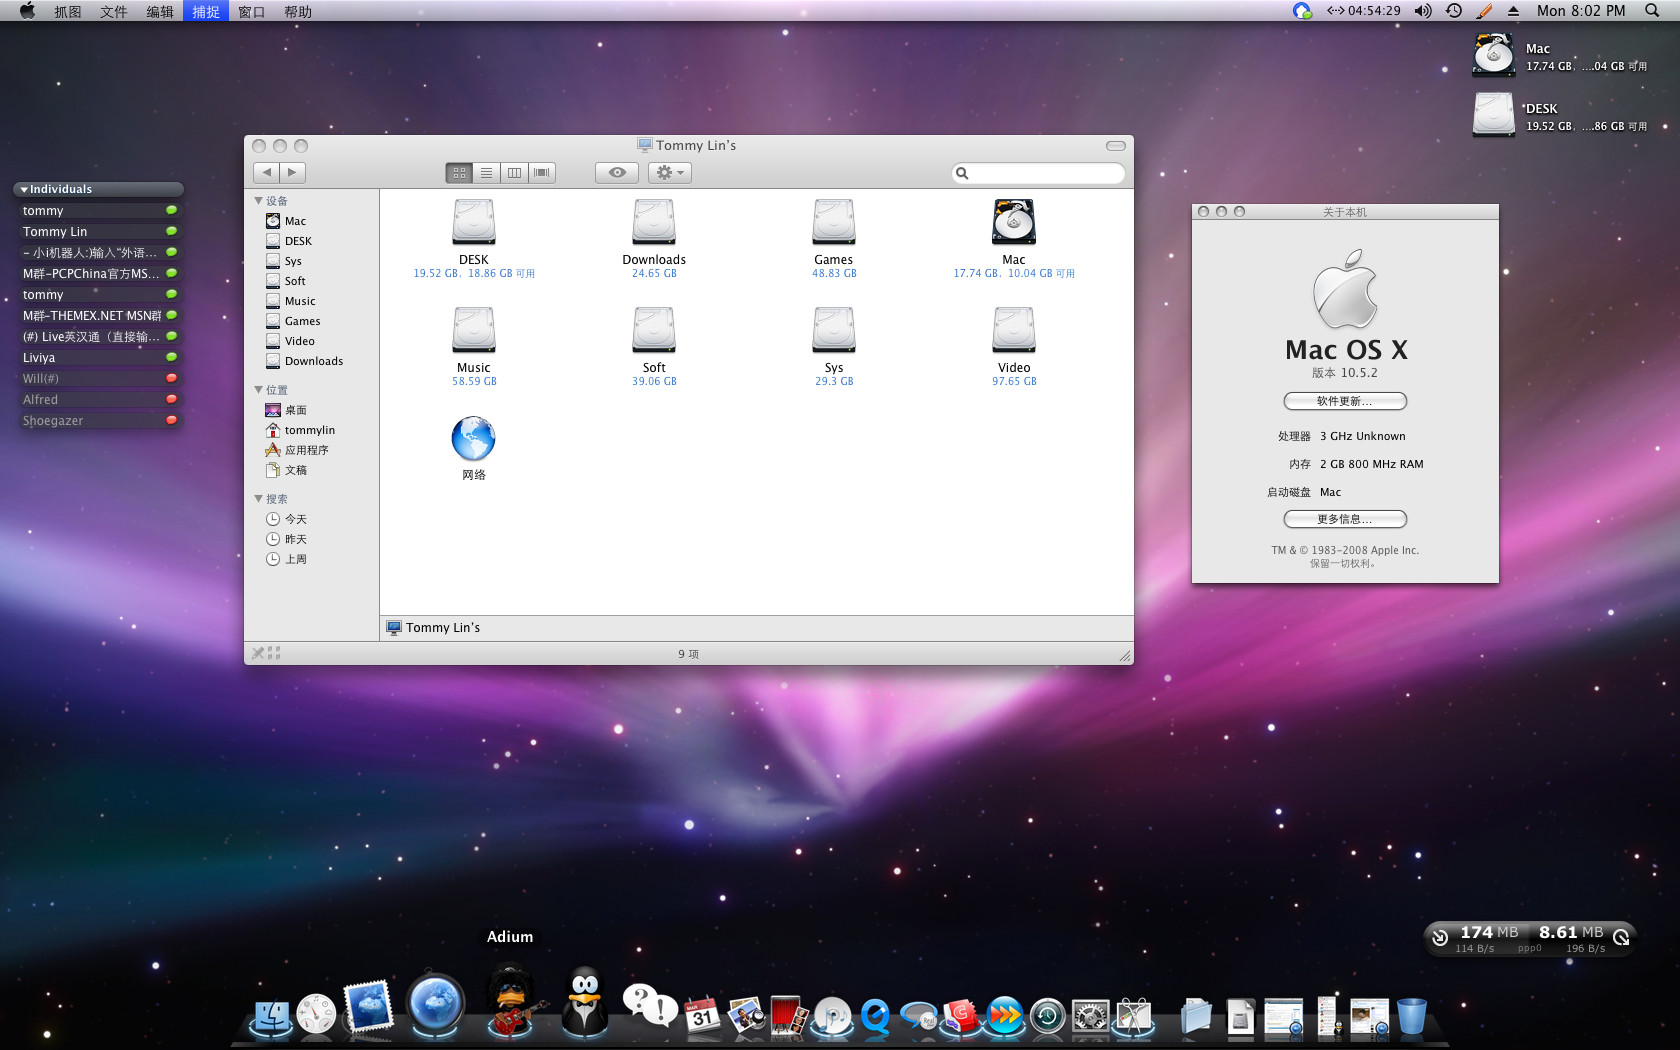 Mac os x 10.6.8 update combo v1.1